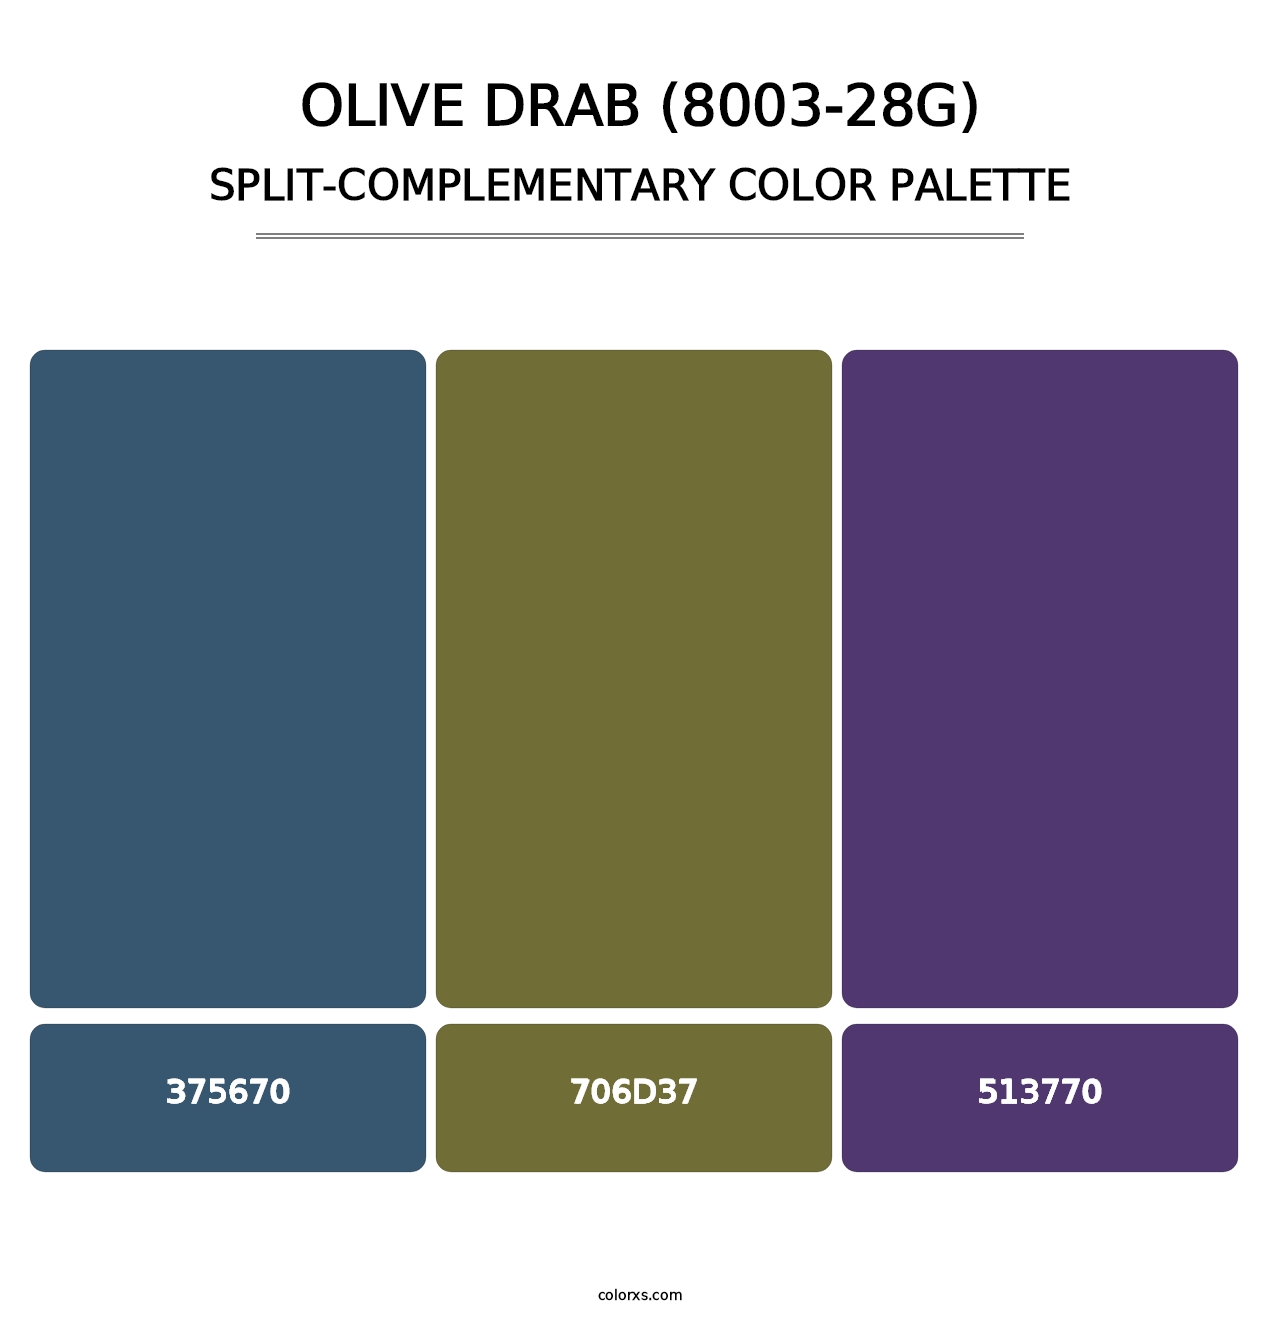 Olive Drab (8003-28G) - Split-Complementary Color Palette